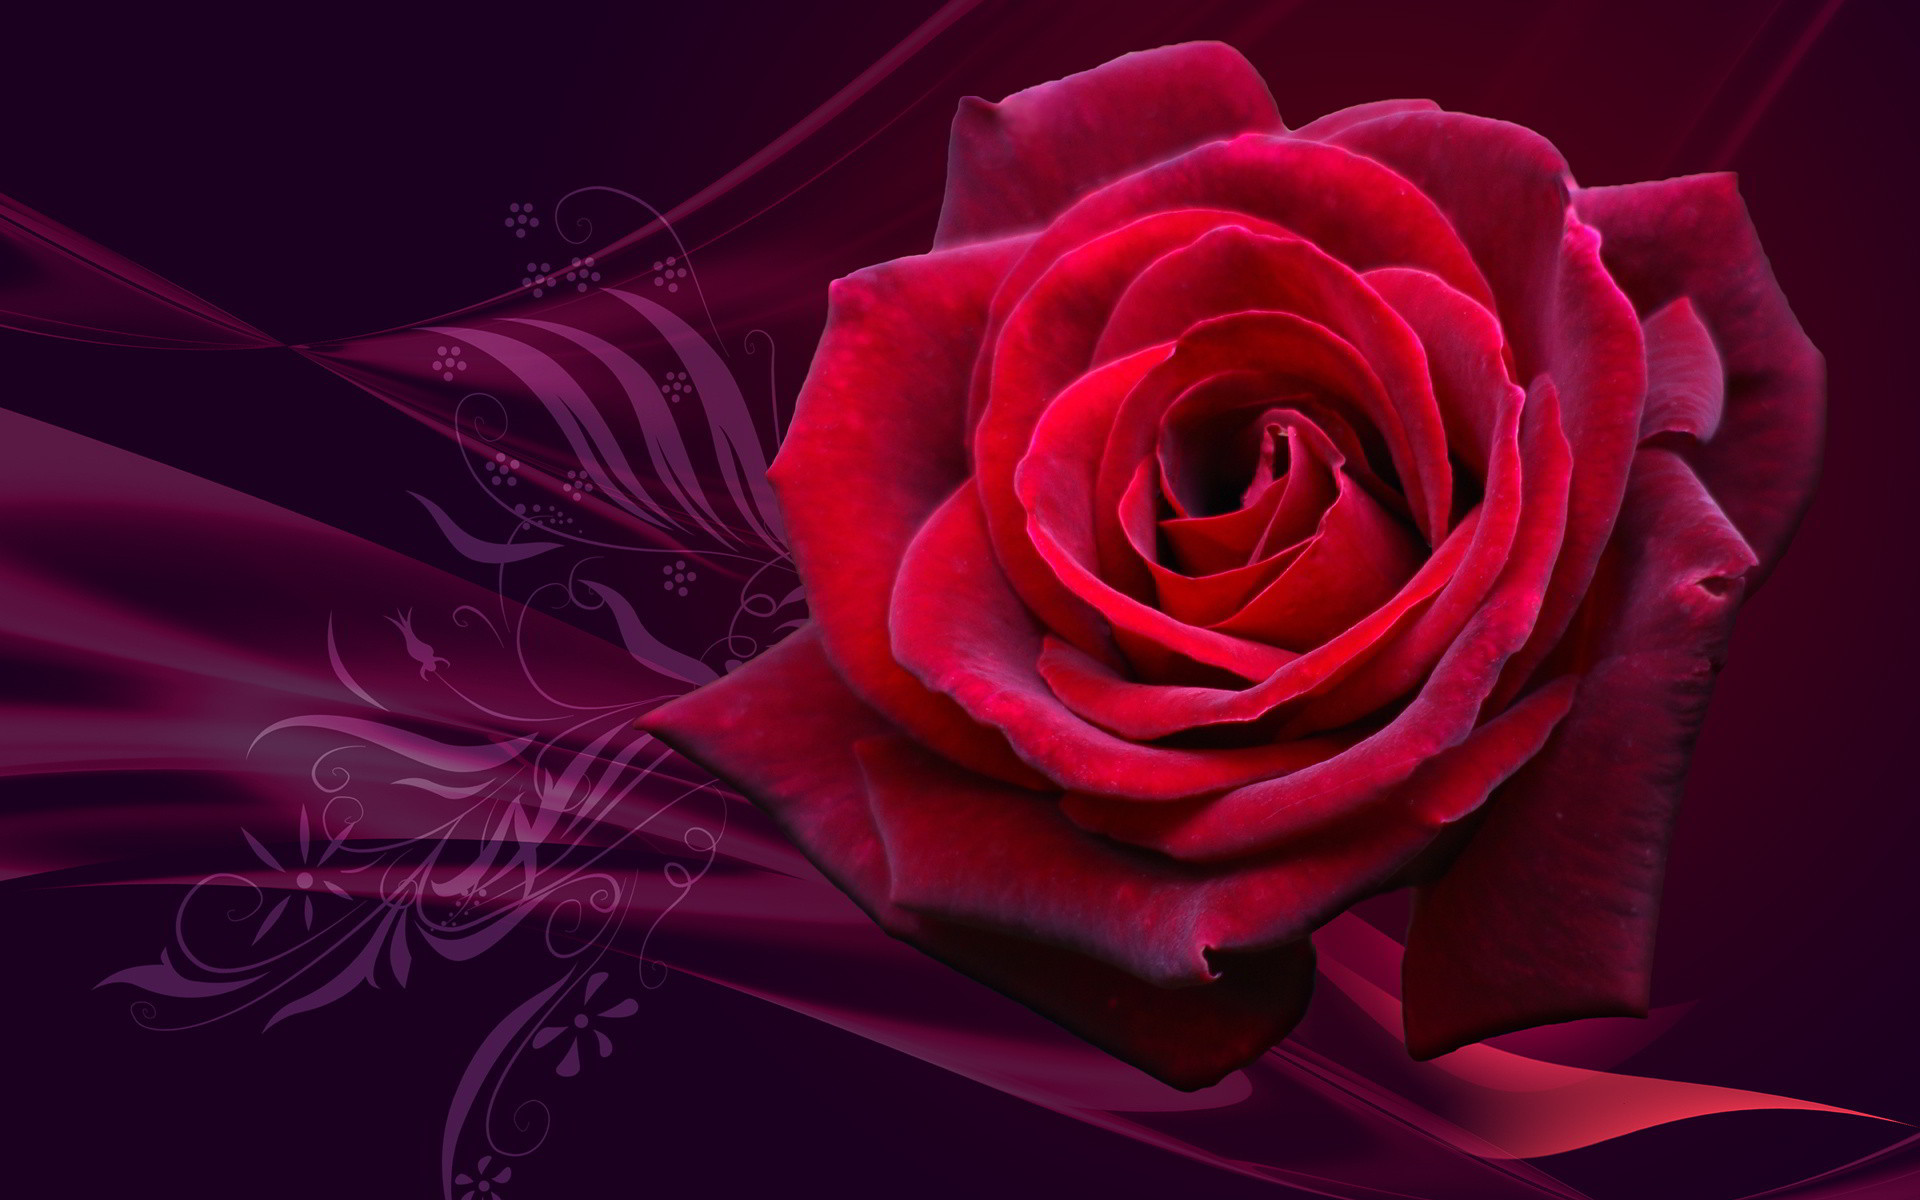 BST] 99+ Hình nền Hoa Hồng đẹp nhất gửi tặng người yêu